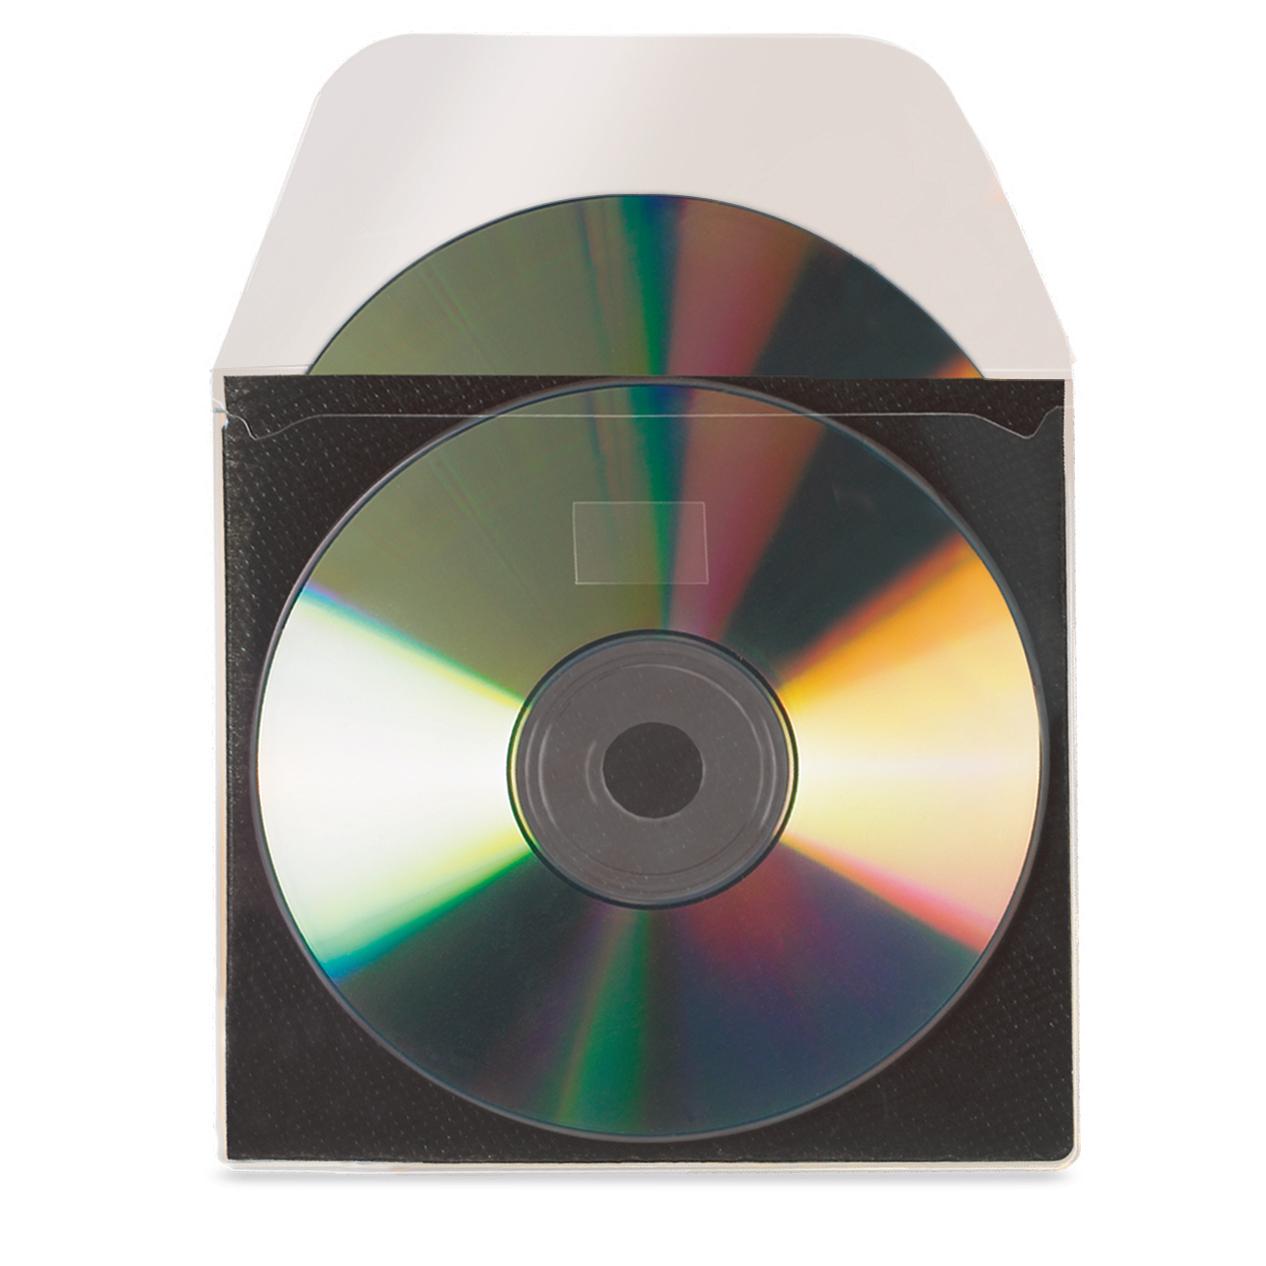 Self-adhesive CD Pockets with Protective Inlay, 10 pcs.